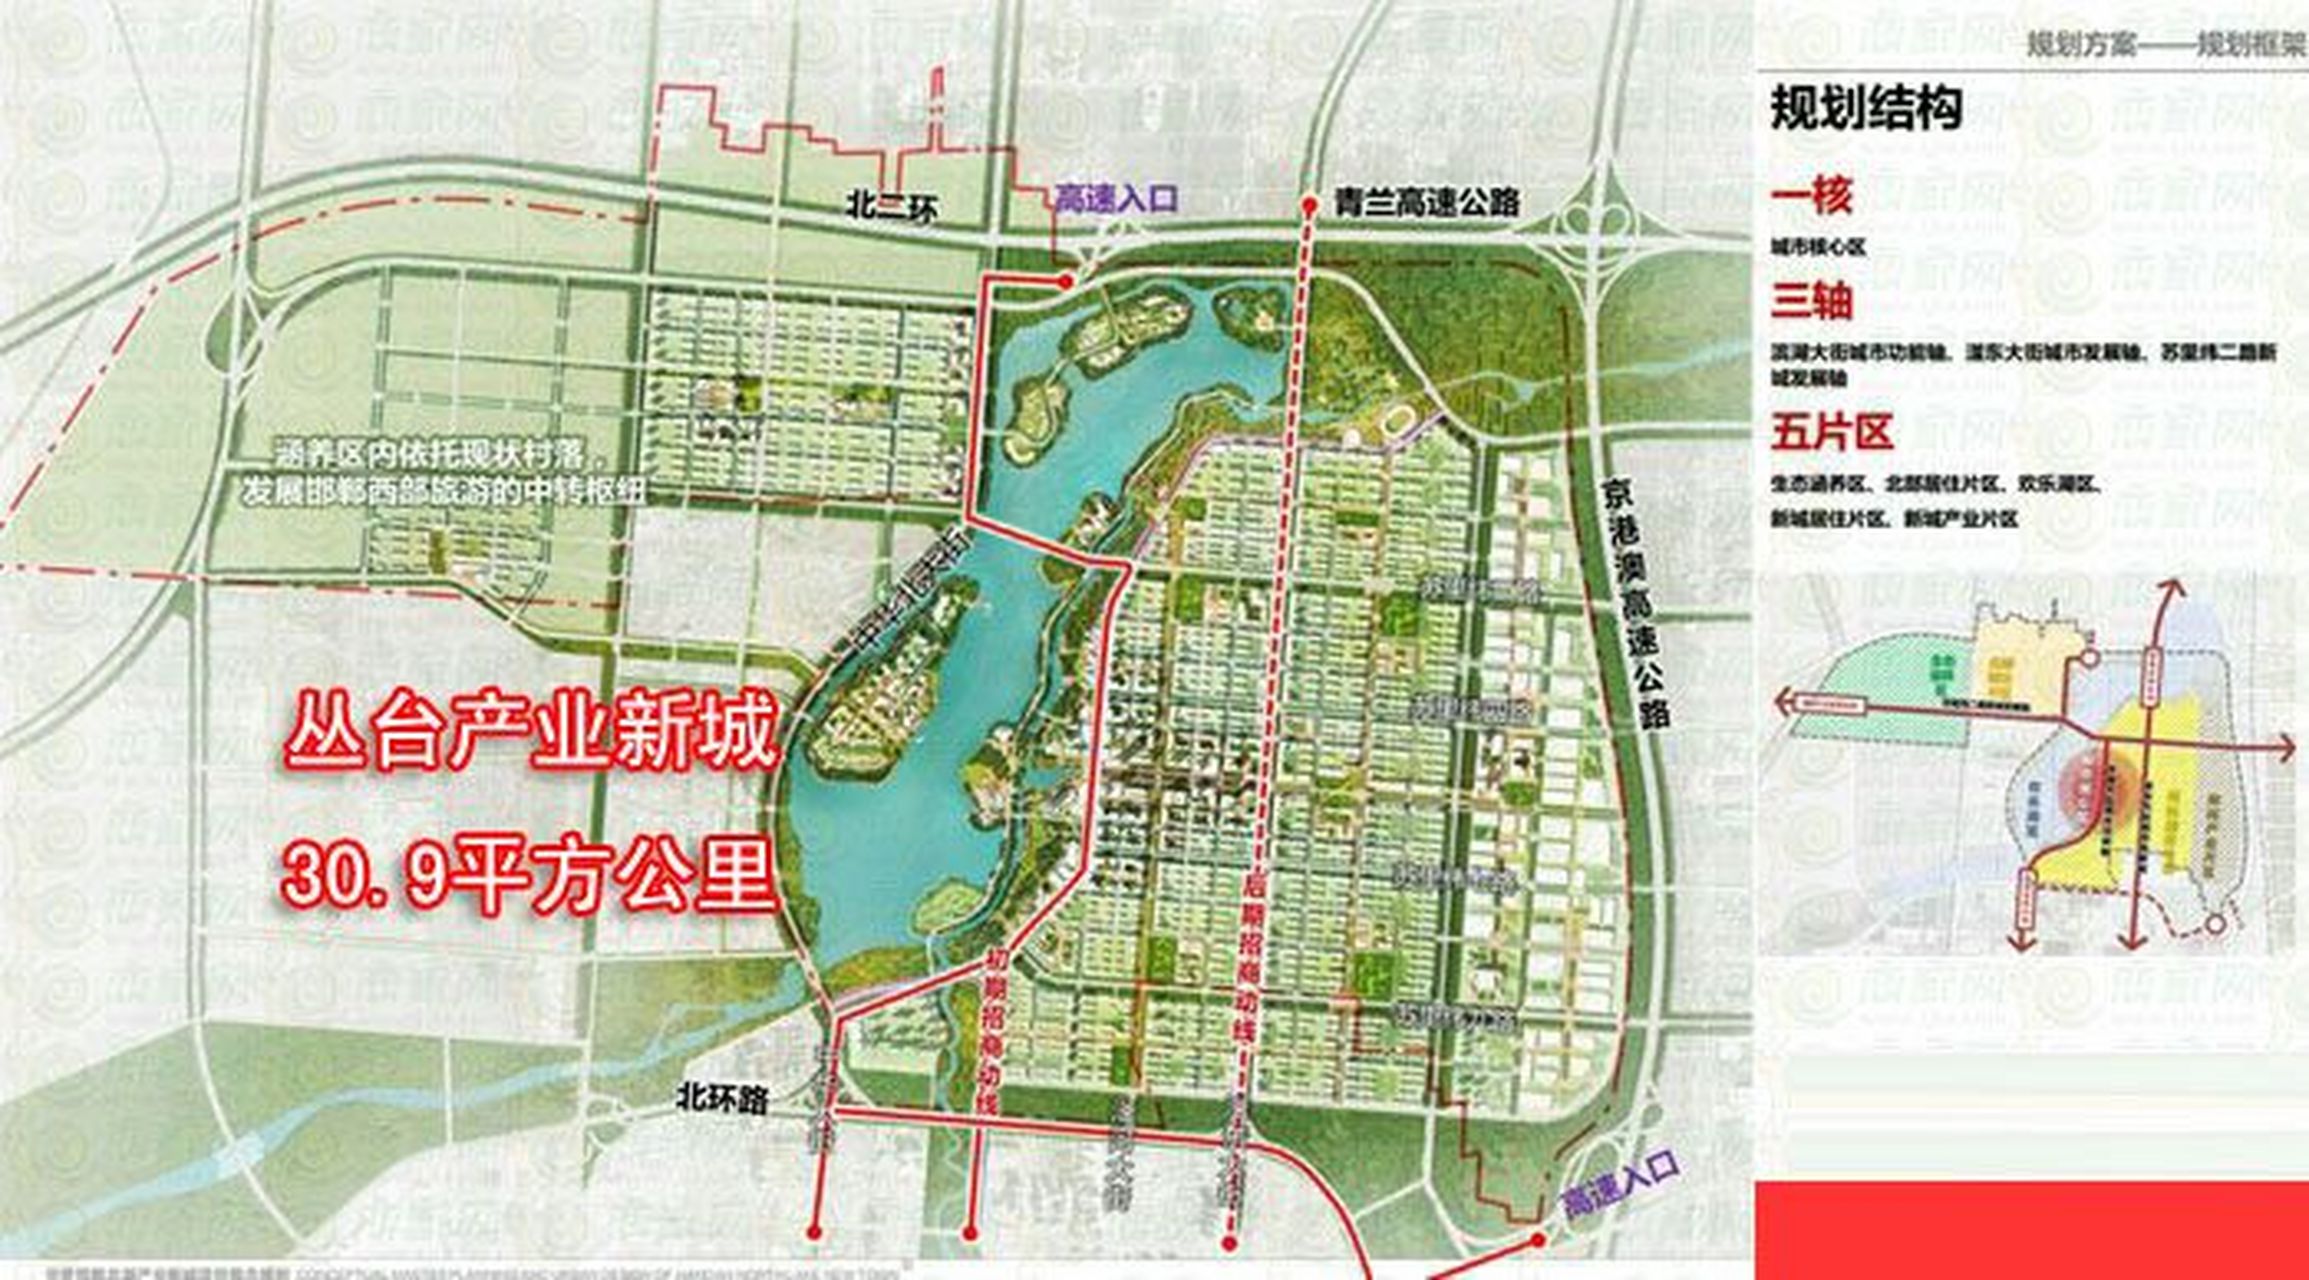 邯郸东区(东部新城)面积是70平方公里,丛台产业新城是30.